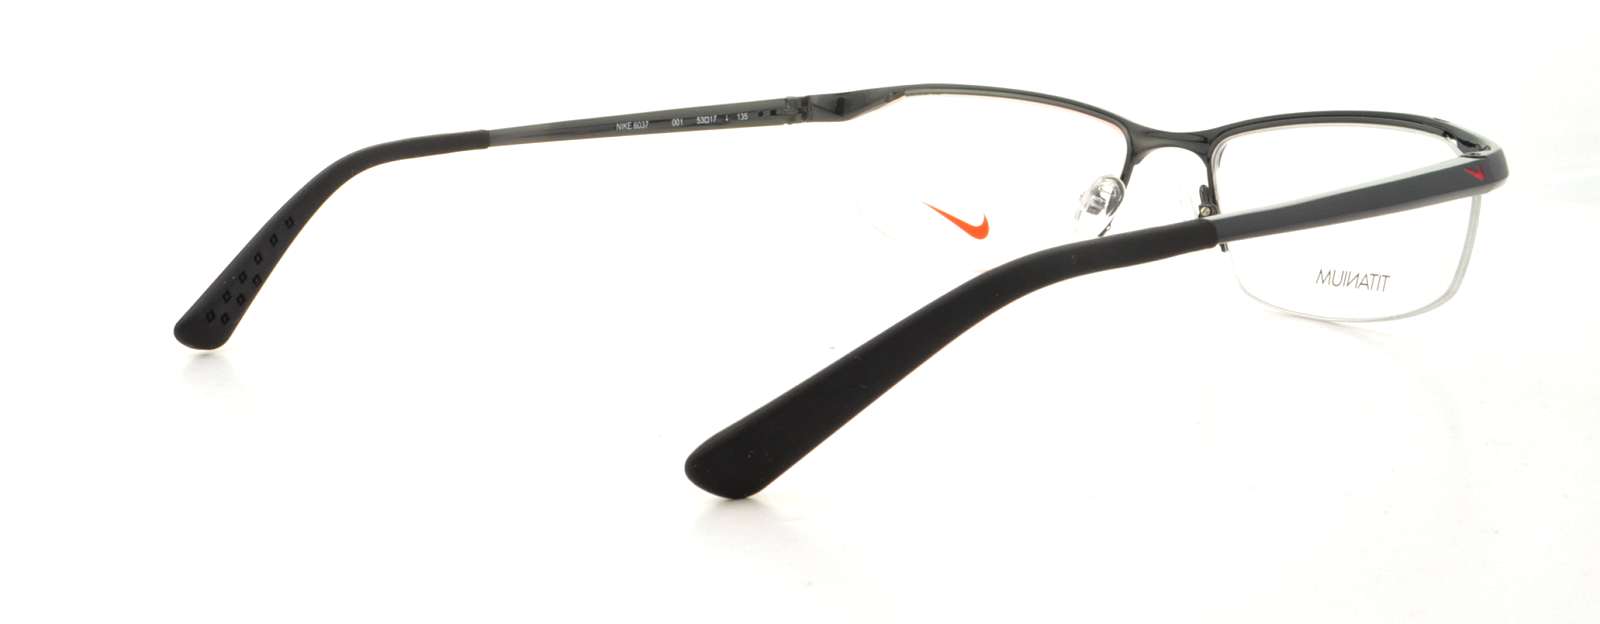 Padre fage Aclarar antiguo Designer Frames Outlet. Nike Eyeglasses 6037